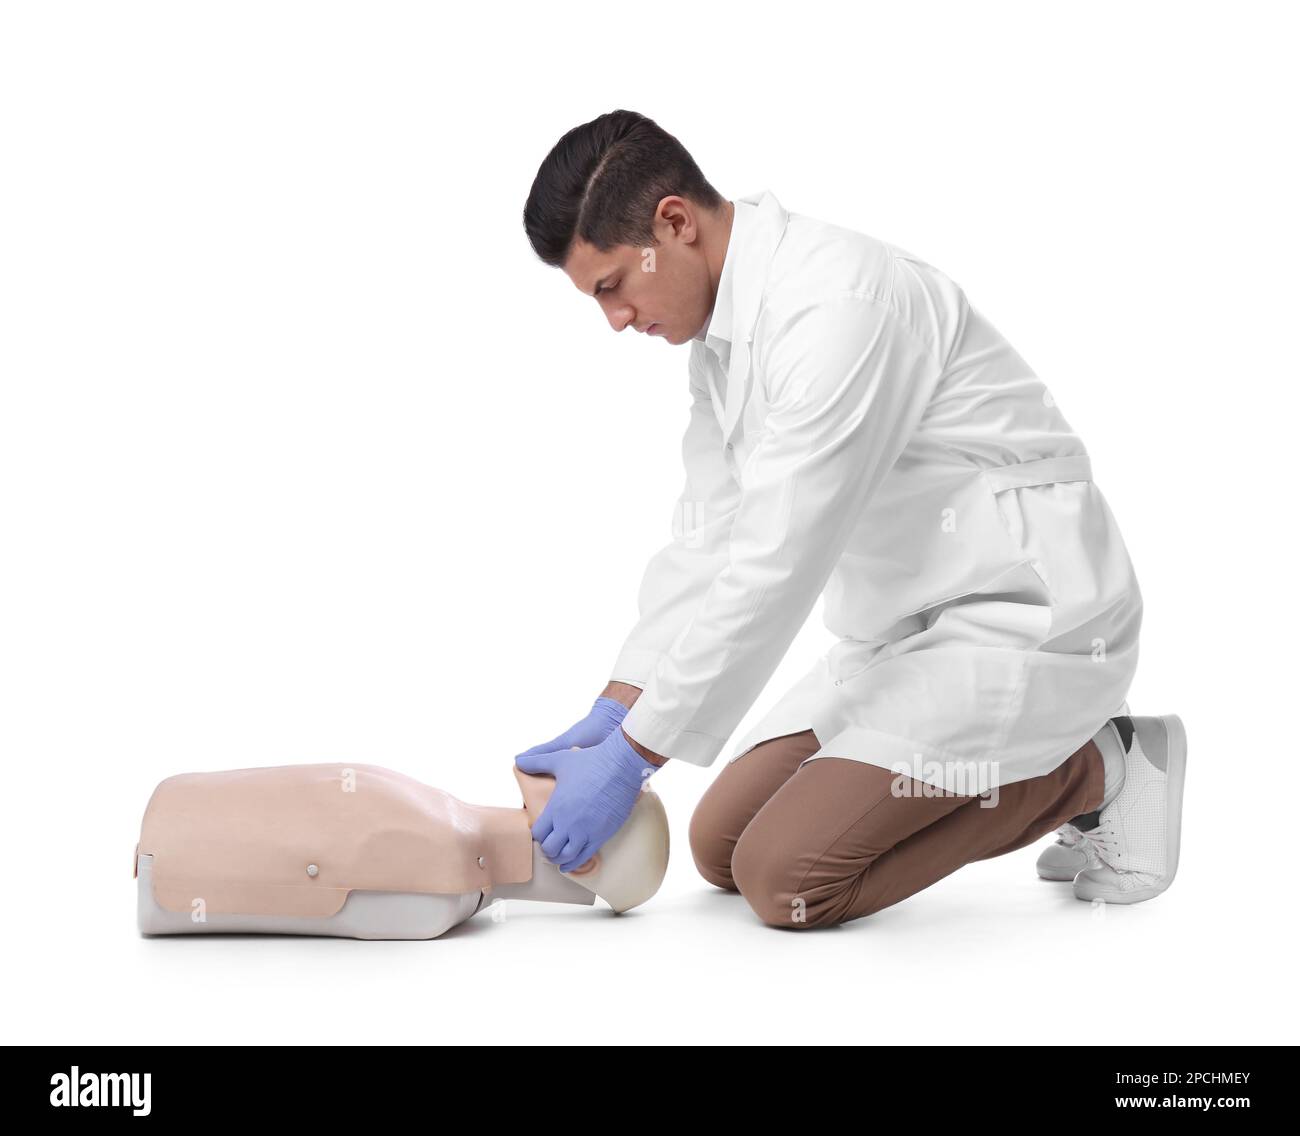 Médecin en uniforme pratiquant les premiers soins sur un mannequin sur fond blanc Banque D'Images